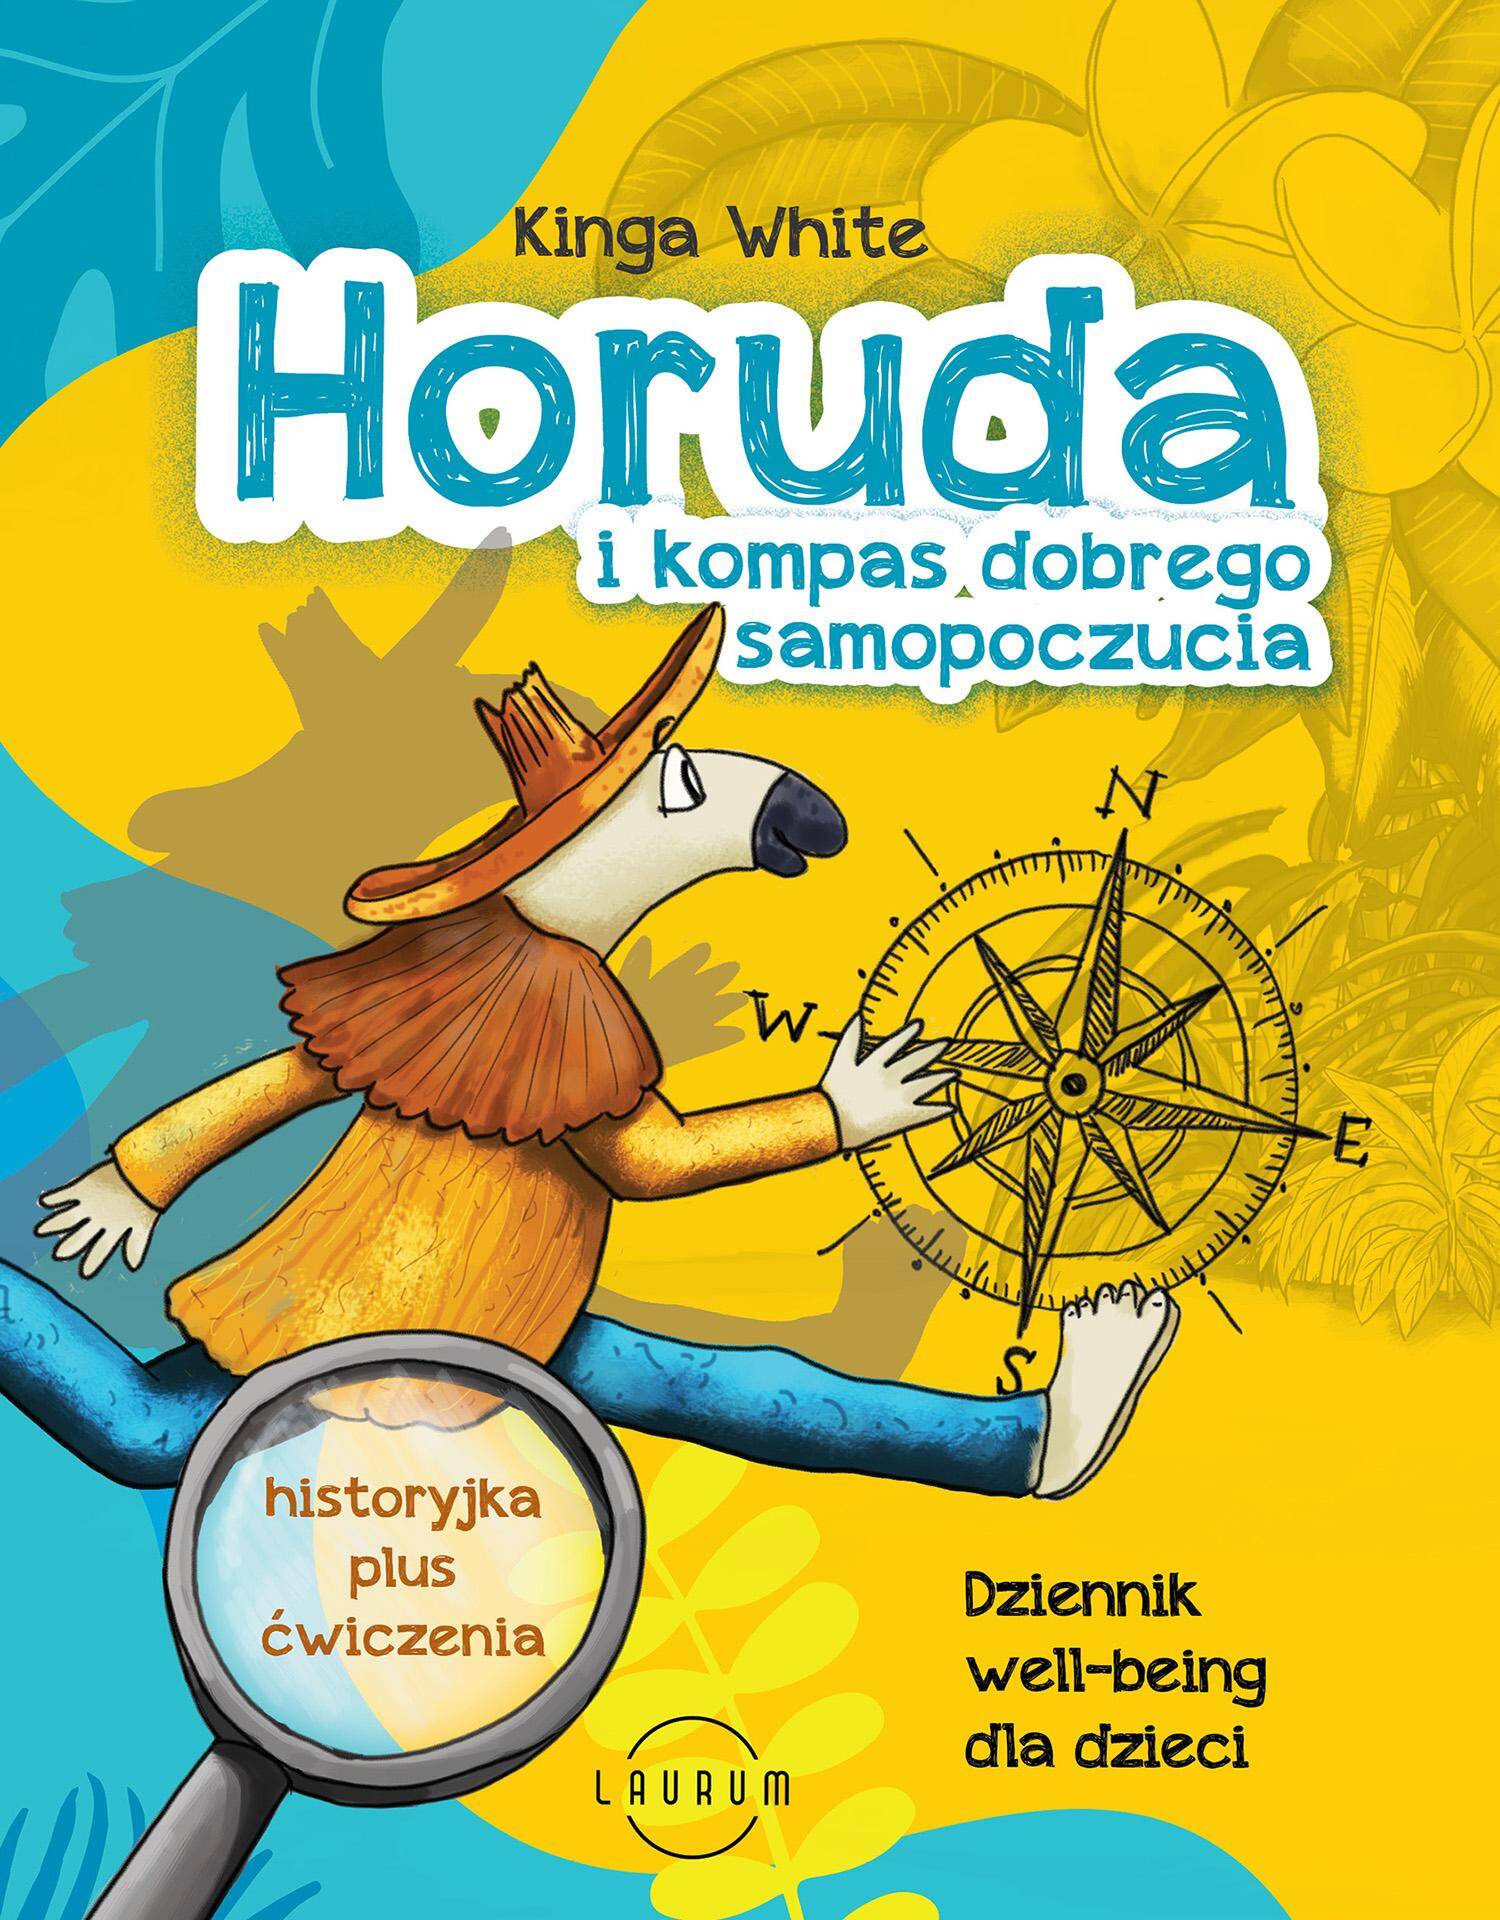 Horuda i kompas dobrego samopoczucia. Dziennik well-being dla dzieci